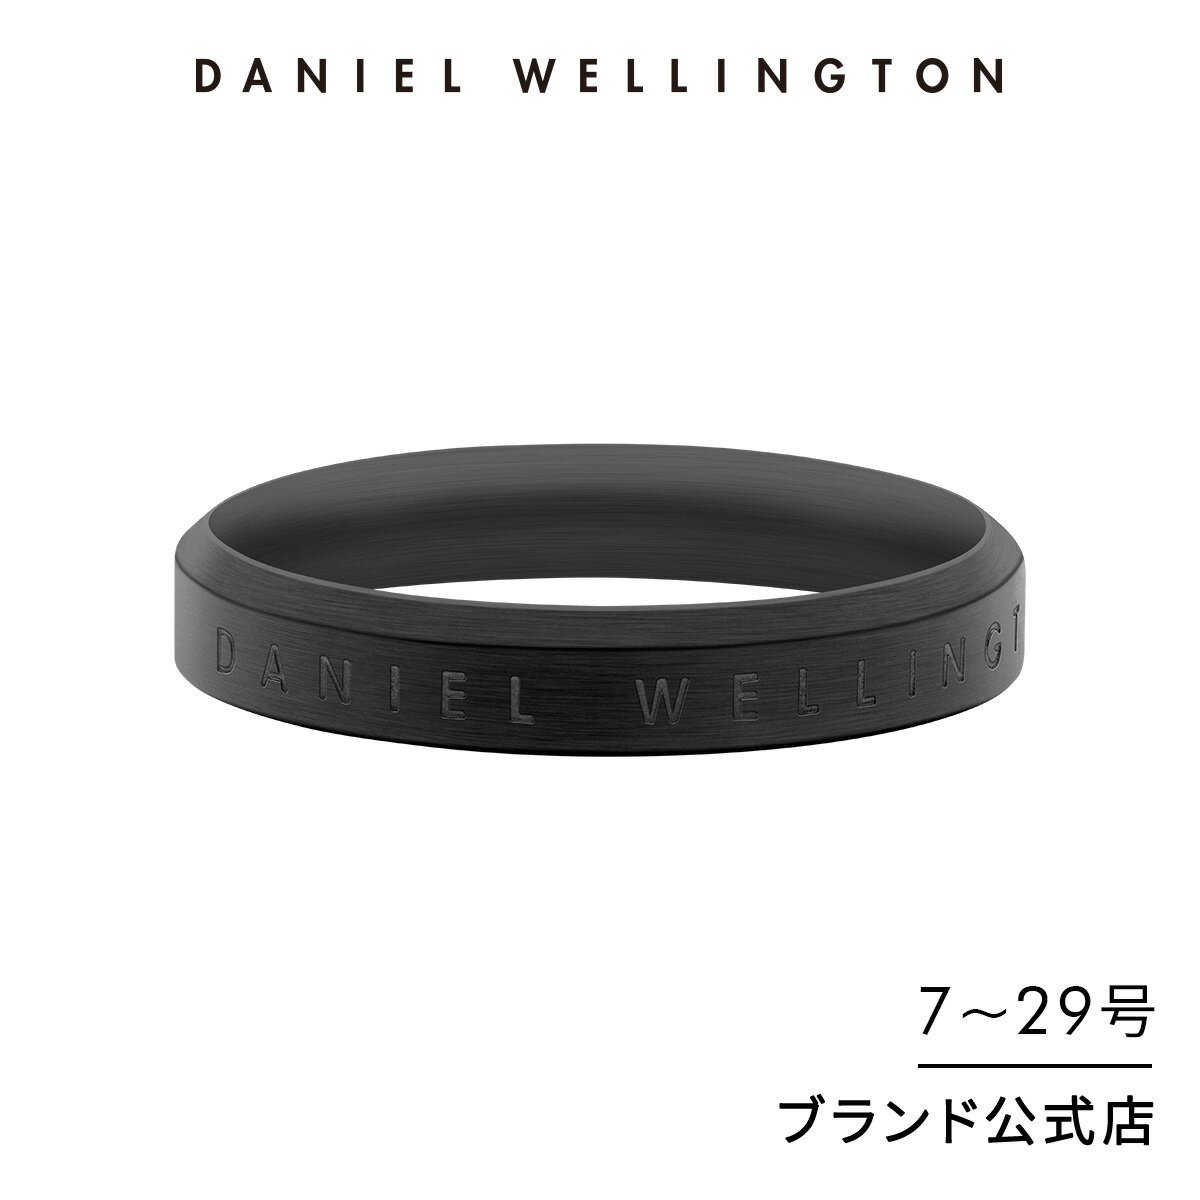 リング 指輪 ダニエルウェリントン Daniel Wellington Classic Ring Black アクセサリー ブランド 20代 30代 大人 メンズ レディース ペアリング 最新作 シンプル ブラック グレー マット メタリック おしゃれ ギフト プレゼント 祝い 記念 公式 2年保証 刻印入り 送料無料